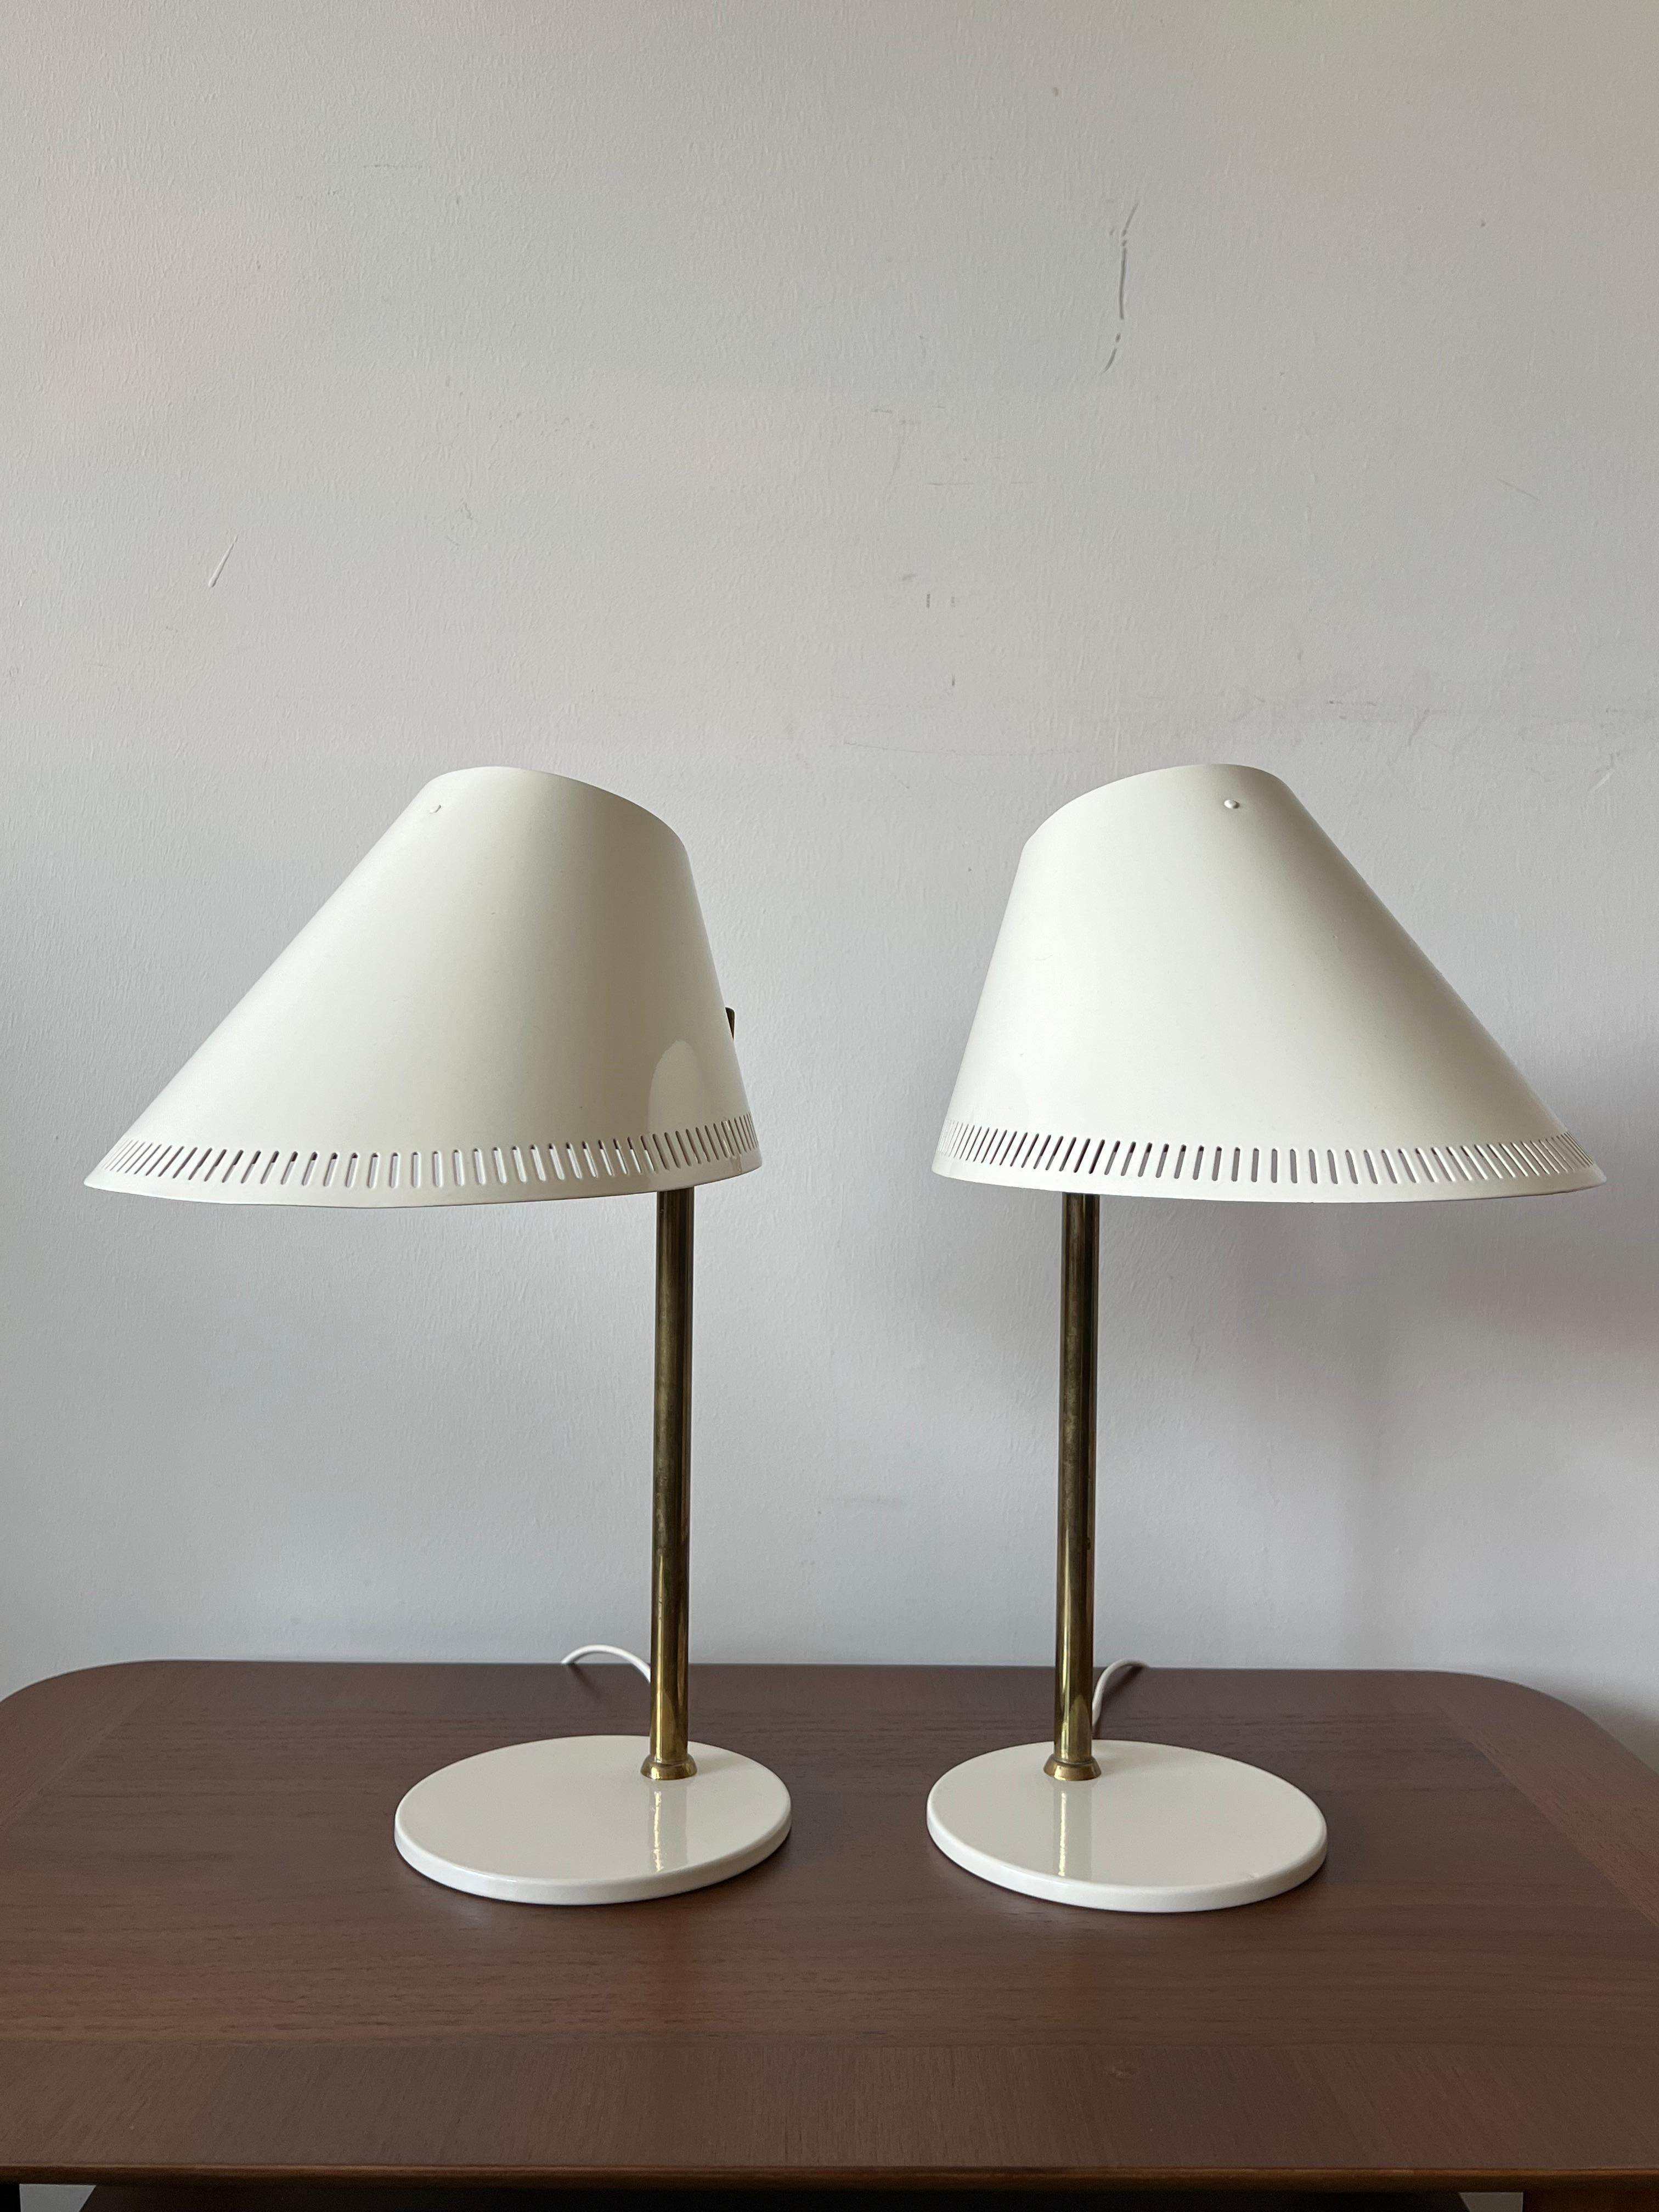 Paire de lampes de table, modèle 9227 par Paavo Tynne, conçues pour Idman/Taito, vers les années 1950. Revêtement en poudre, peinture émaillée couleur crème, construction en laiton, aluminium et acier.